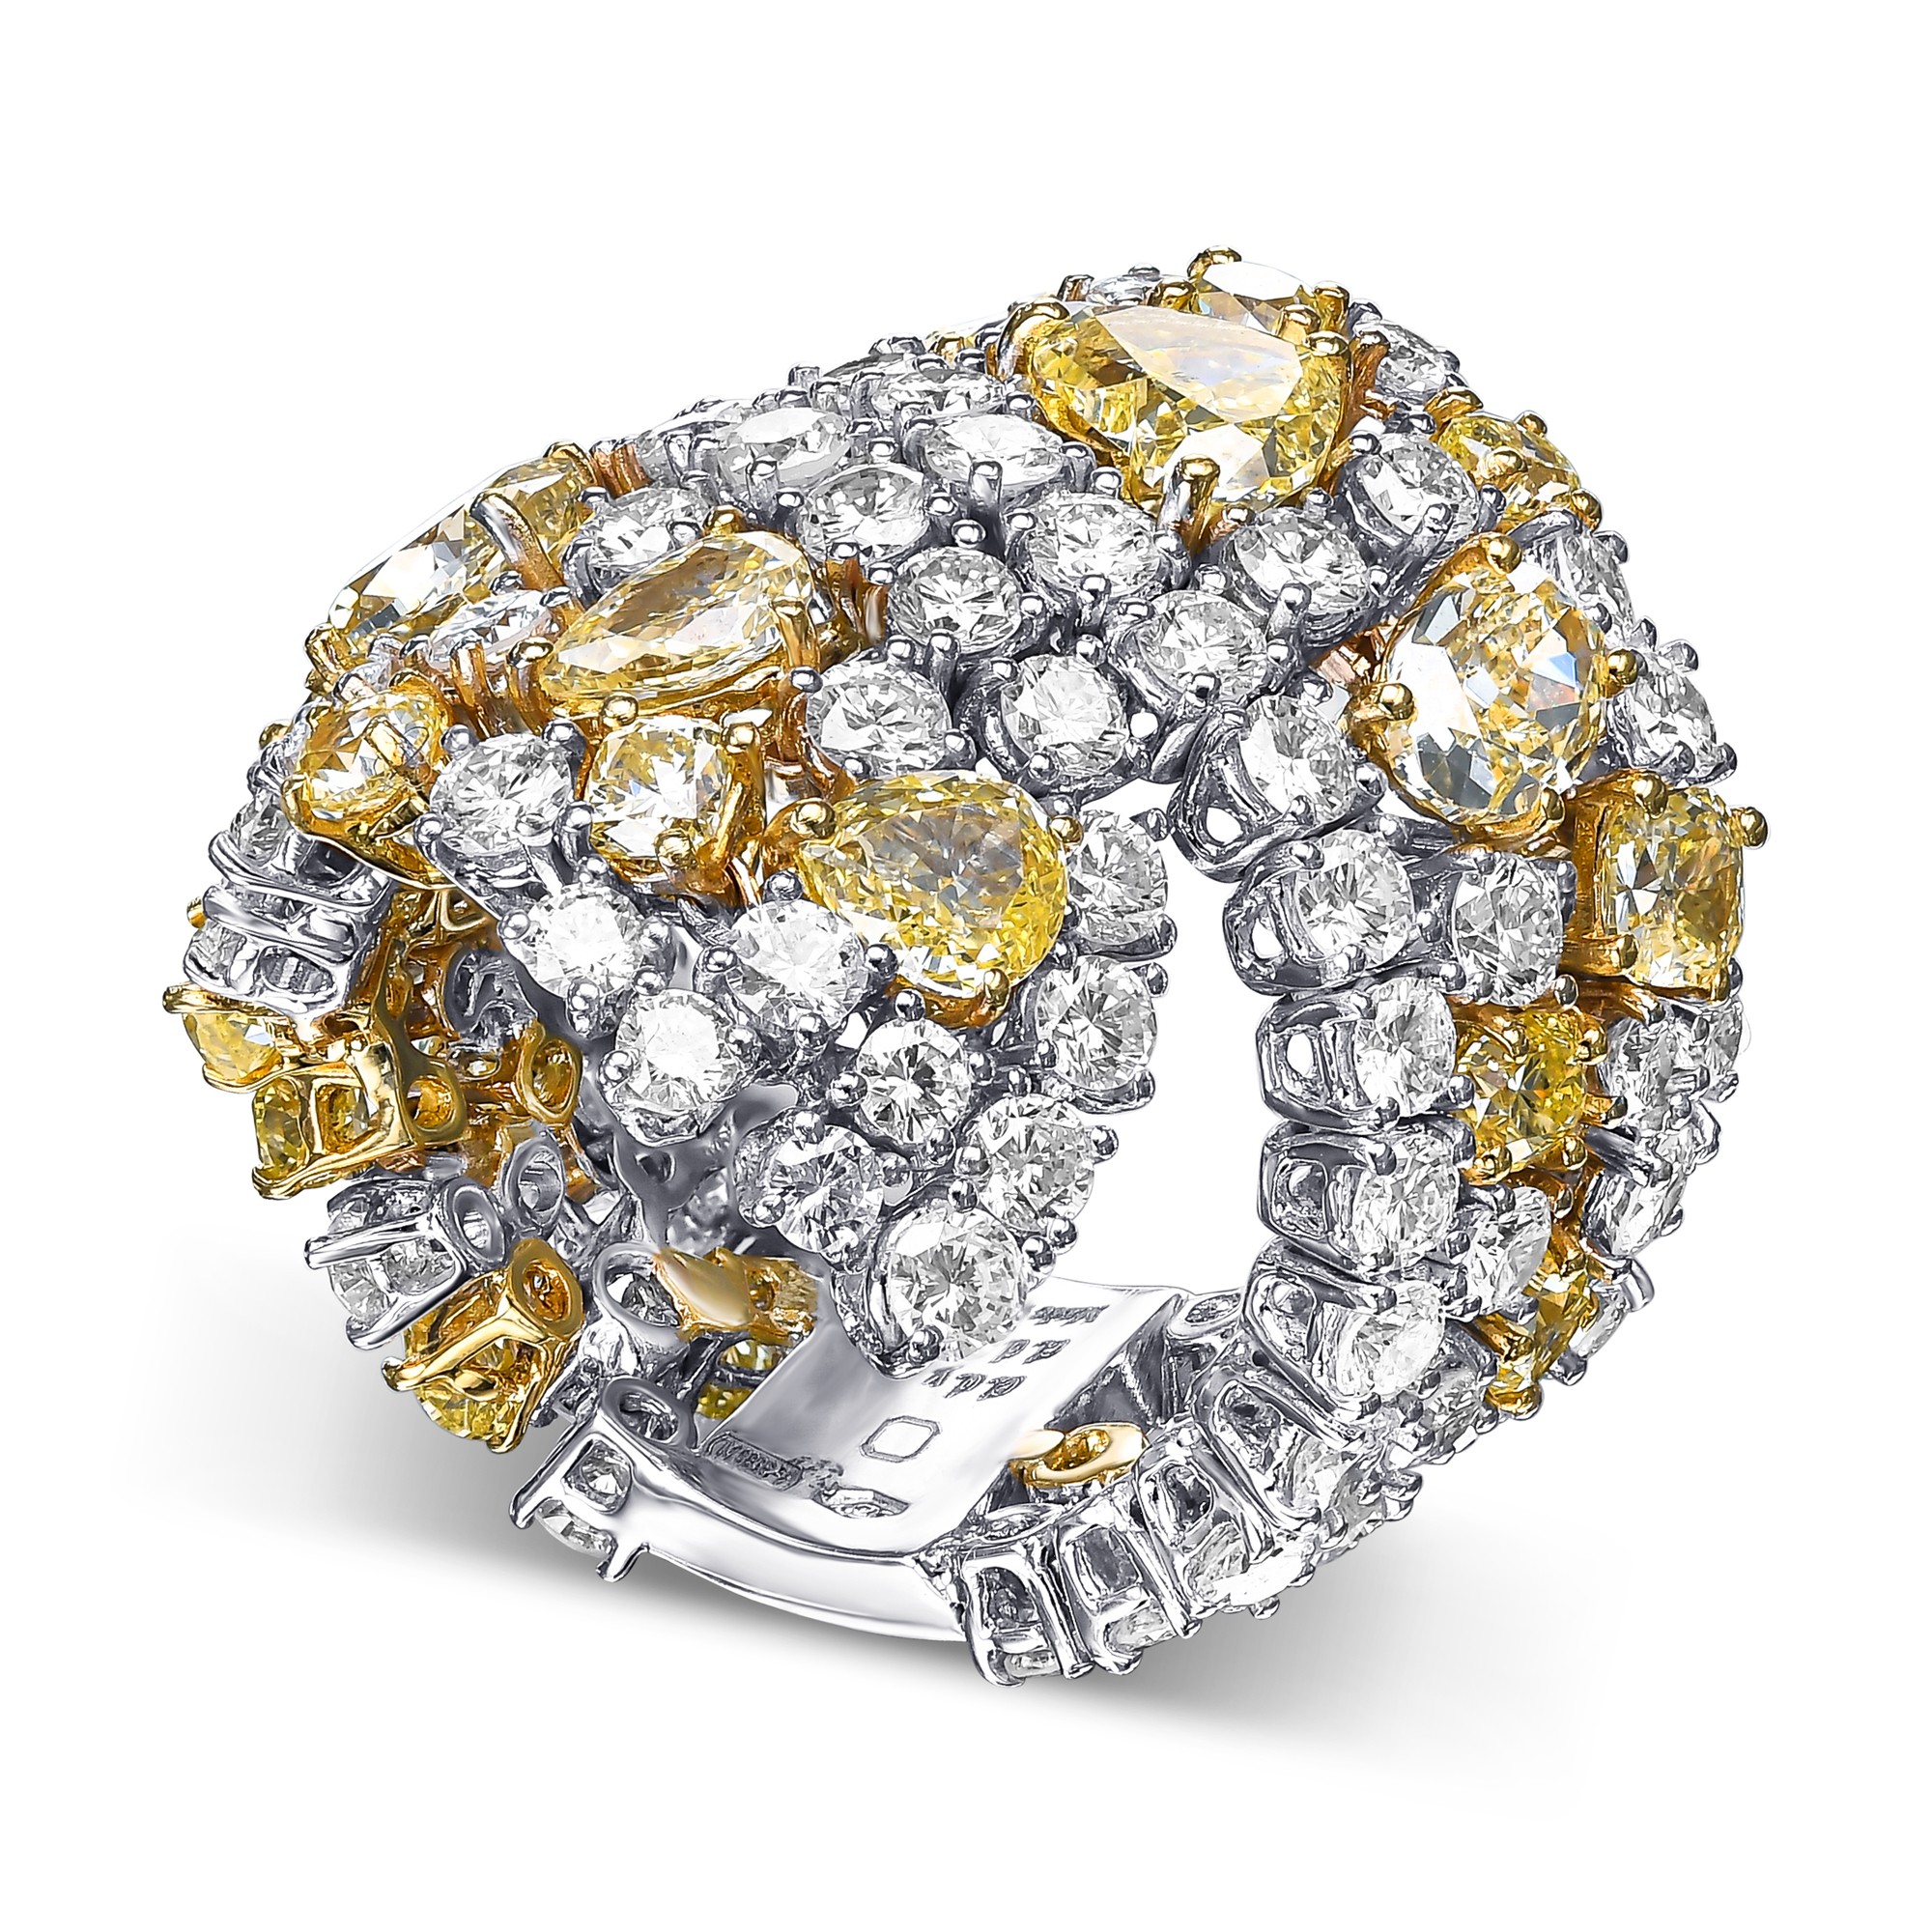 Anello Star Blossom, oro bianco e diamanti - Categorie Q9O55H